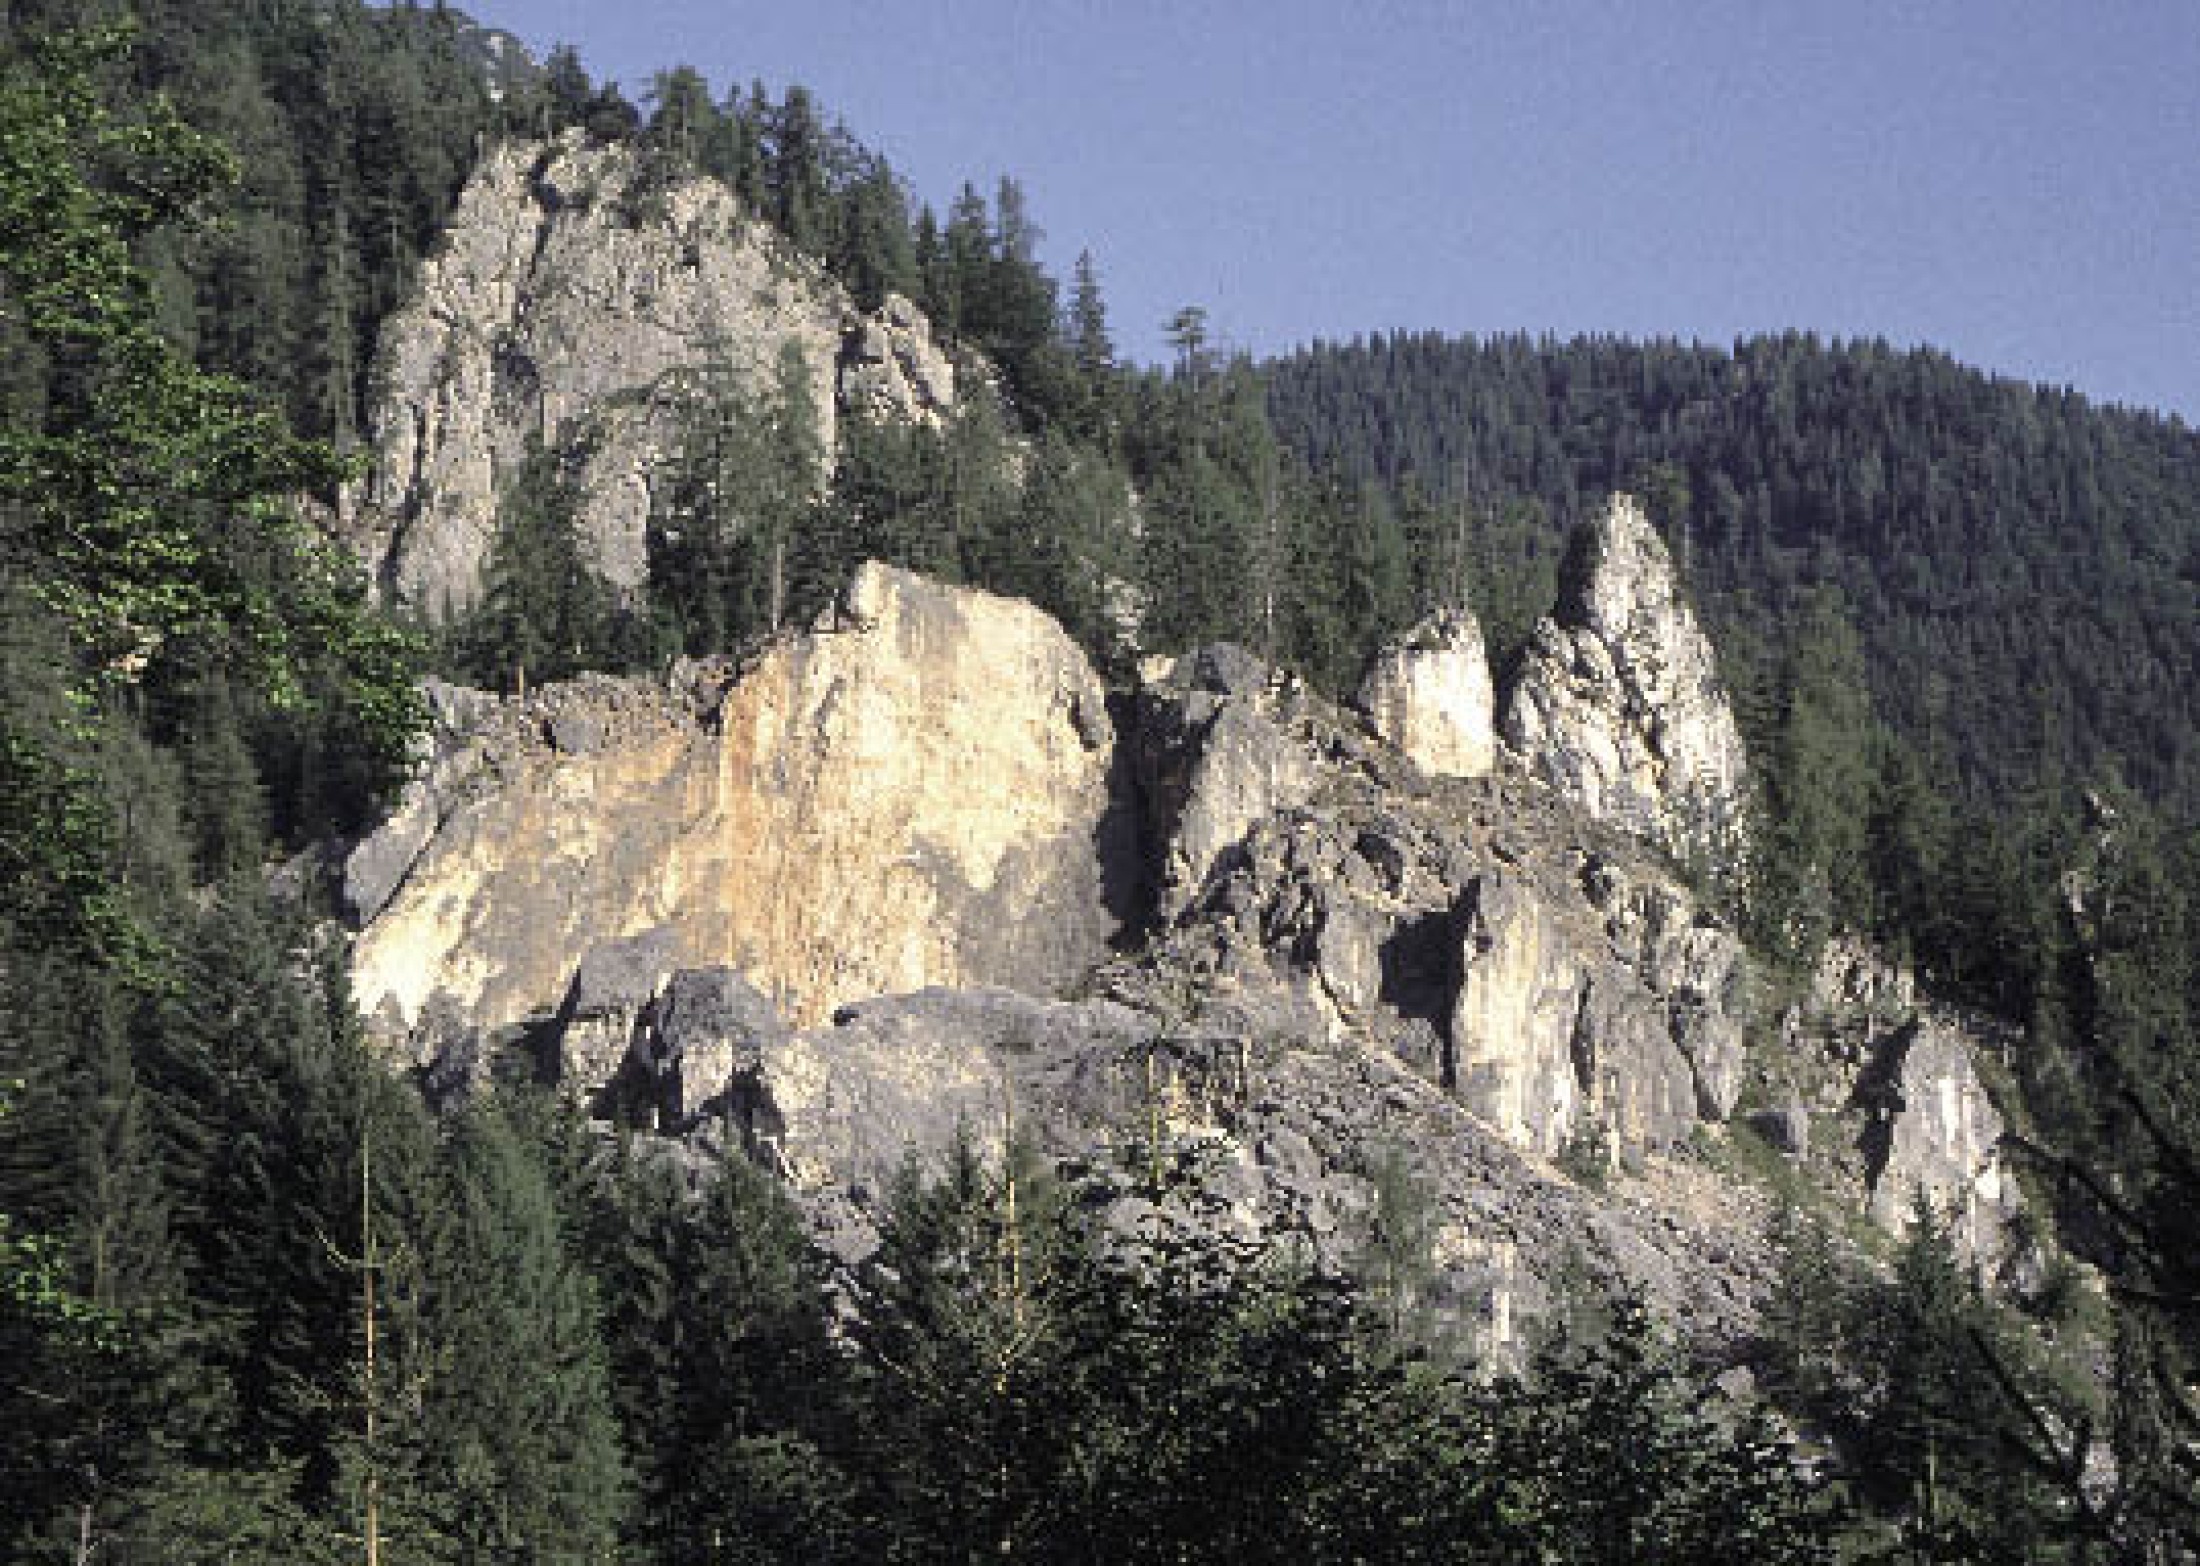 : Blick auf Steinbergkogel: Der vordere Bereich ist besonders stark zerlegt und besteht aus einzelnen Felstürmen und Felswänden. Die Schutthalde mit großen Blöcken zeugt von zahlreichen Felsstürzen in der Vergangenheit. Der letzte größere Abbruch ereignete sich im Dezember 1985. (Bild: D. Ehret)